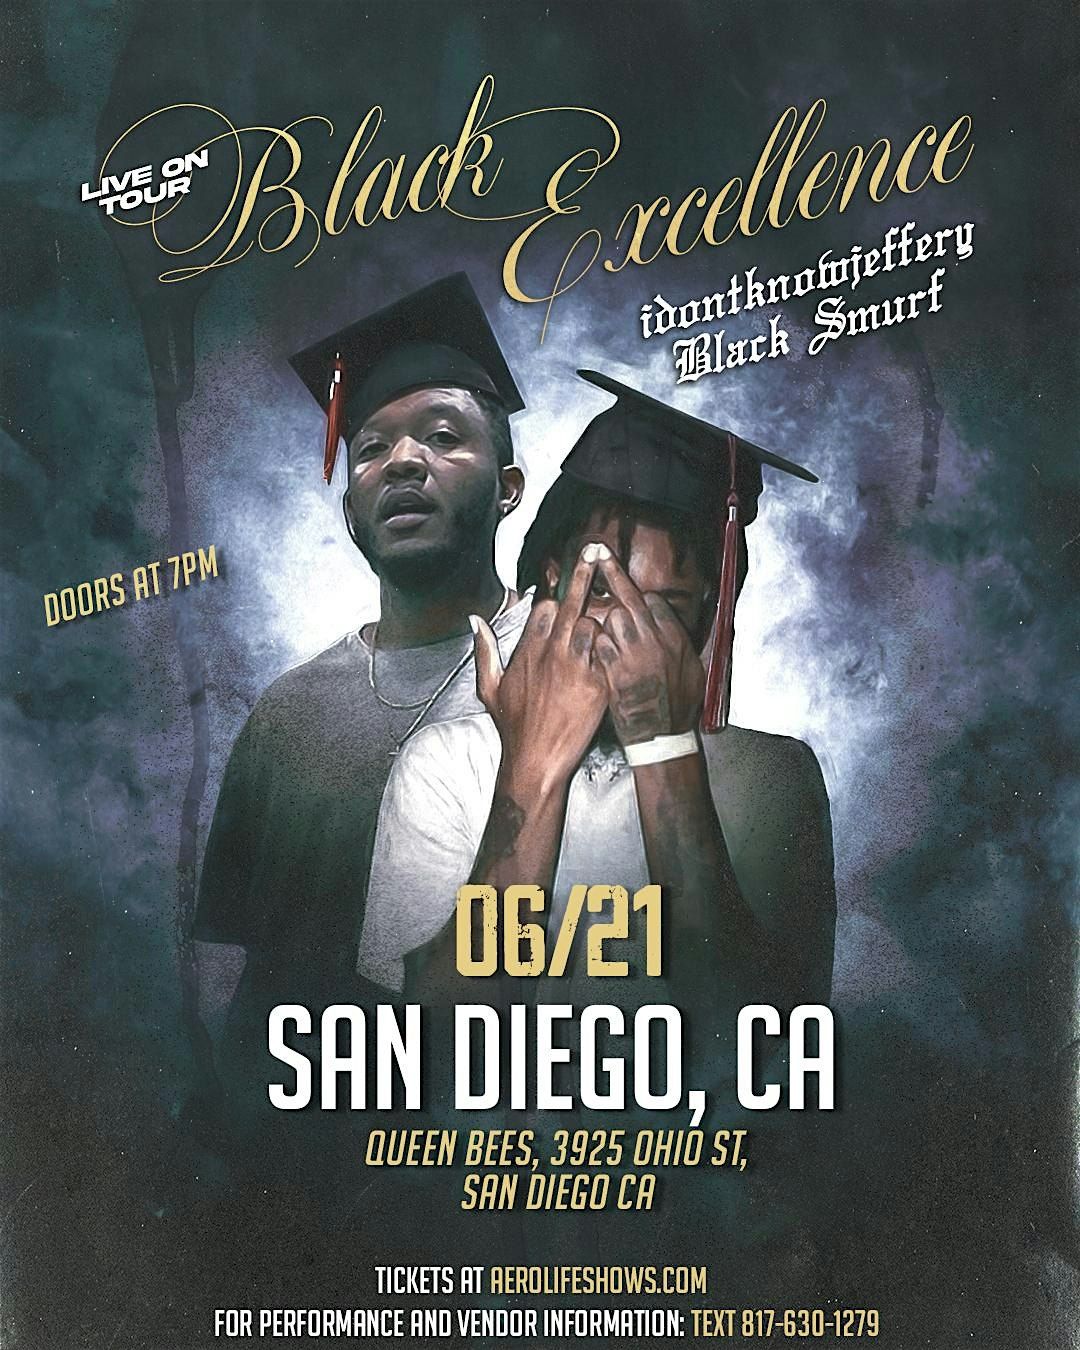 JUNE 21st: IDONTKNOWJEFFERY & Black Smurf Live in San Diego, CA